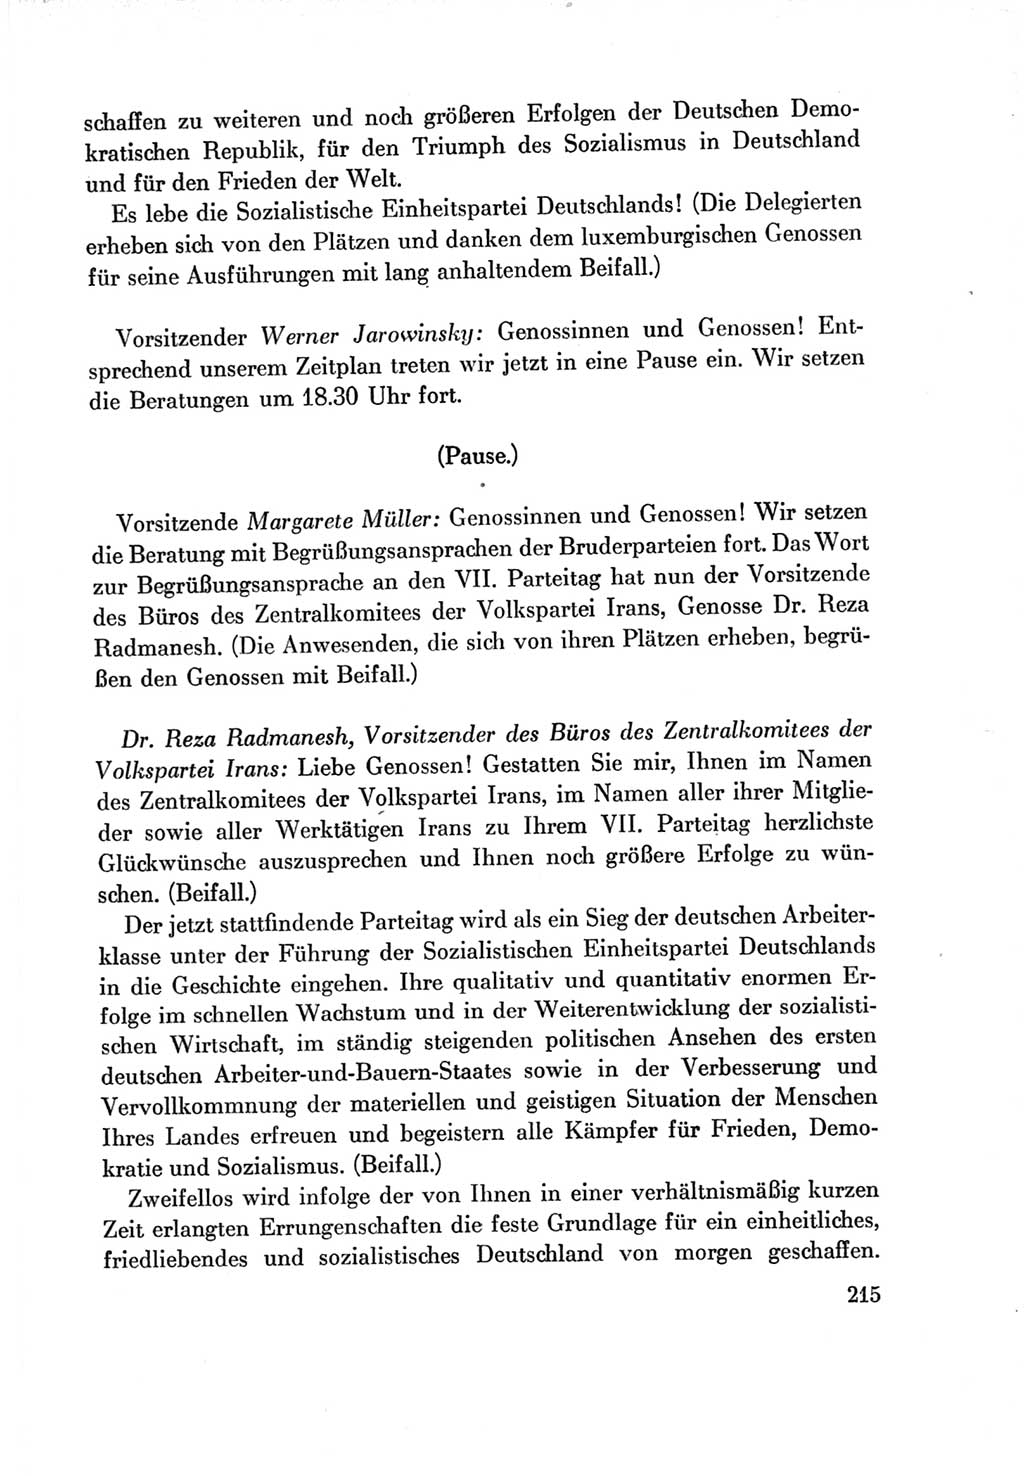 Protokoll der Verhandlungen des Ⅶ. Parteitages der Sozialistischen Einheitspartei Deutschlands (SED) [Deutsche Demokratische Republik (DDR)] 1967, Band Ⅱ, Seite 215 (Prot. Verh. Ⅶ. PT SED DDR 1967, Bd. Ⅱ, S. 215)